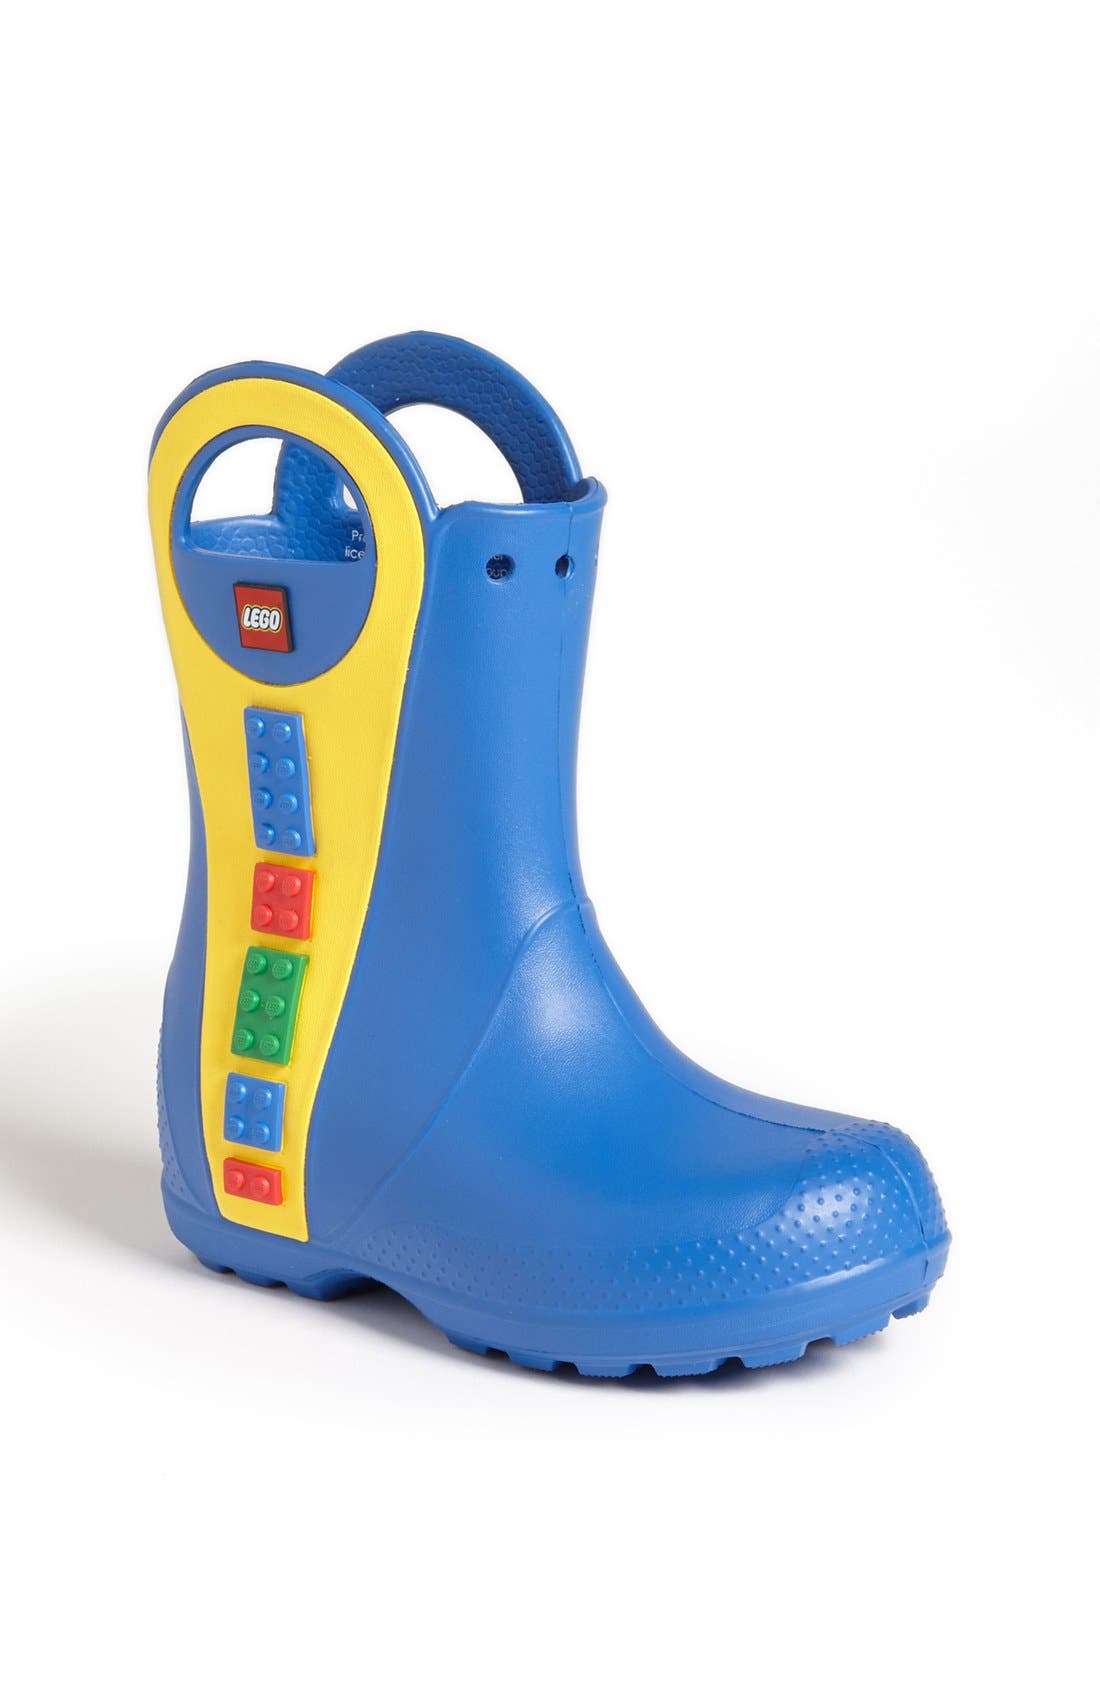 crocs rain boots toddler